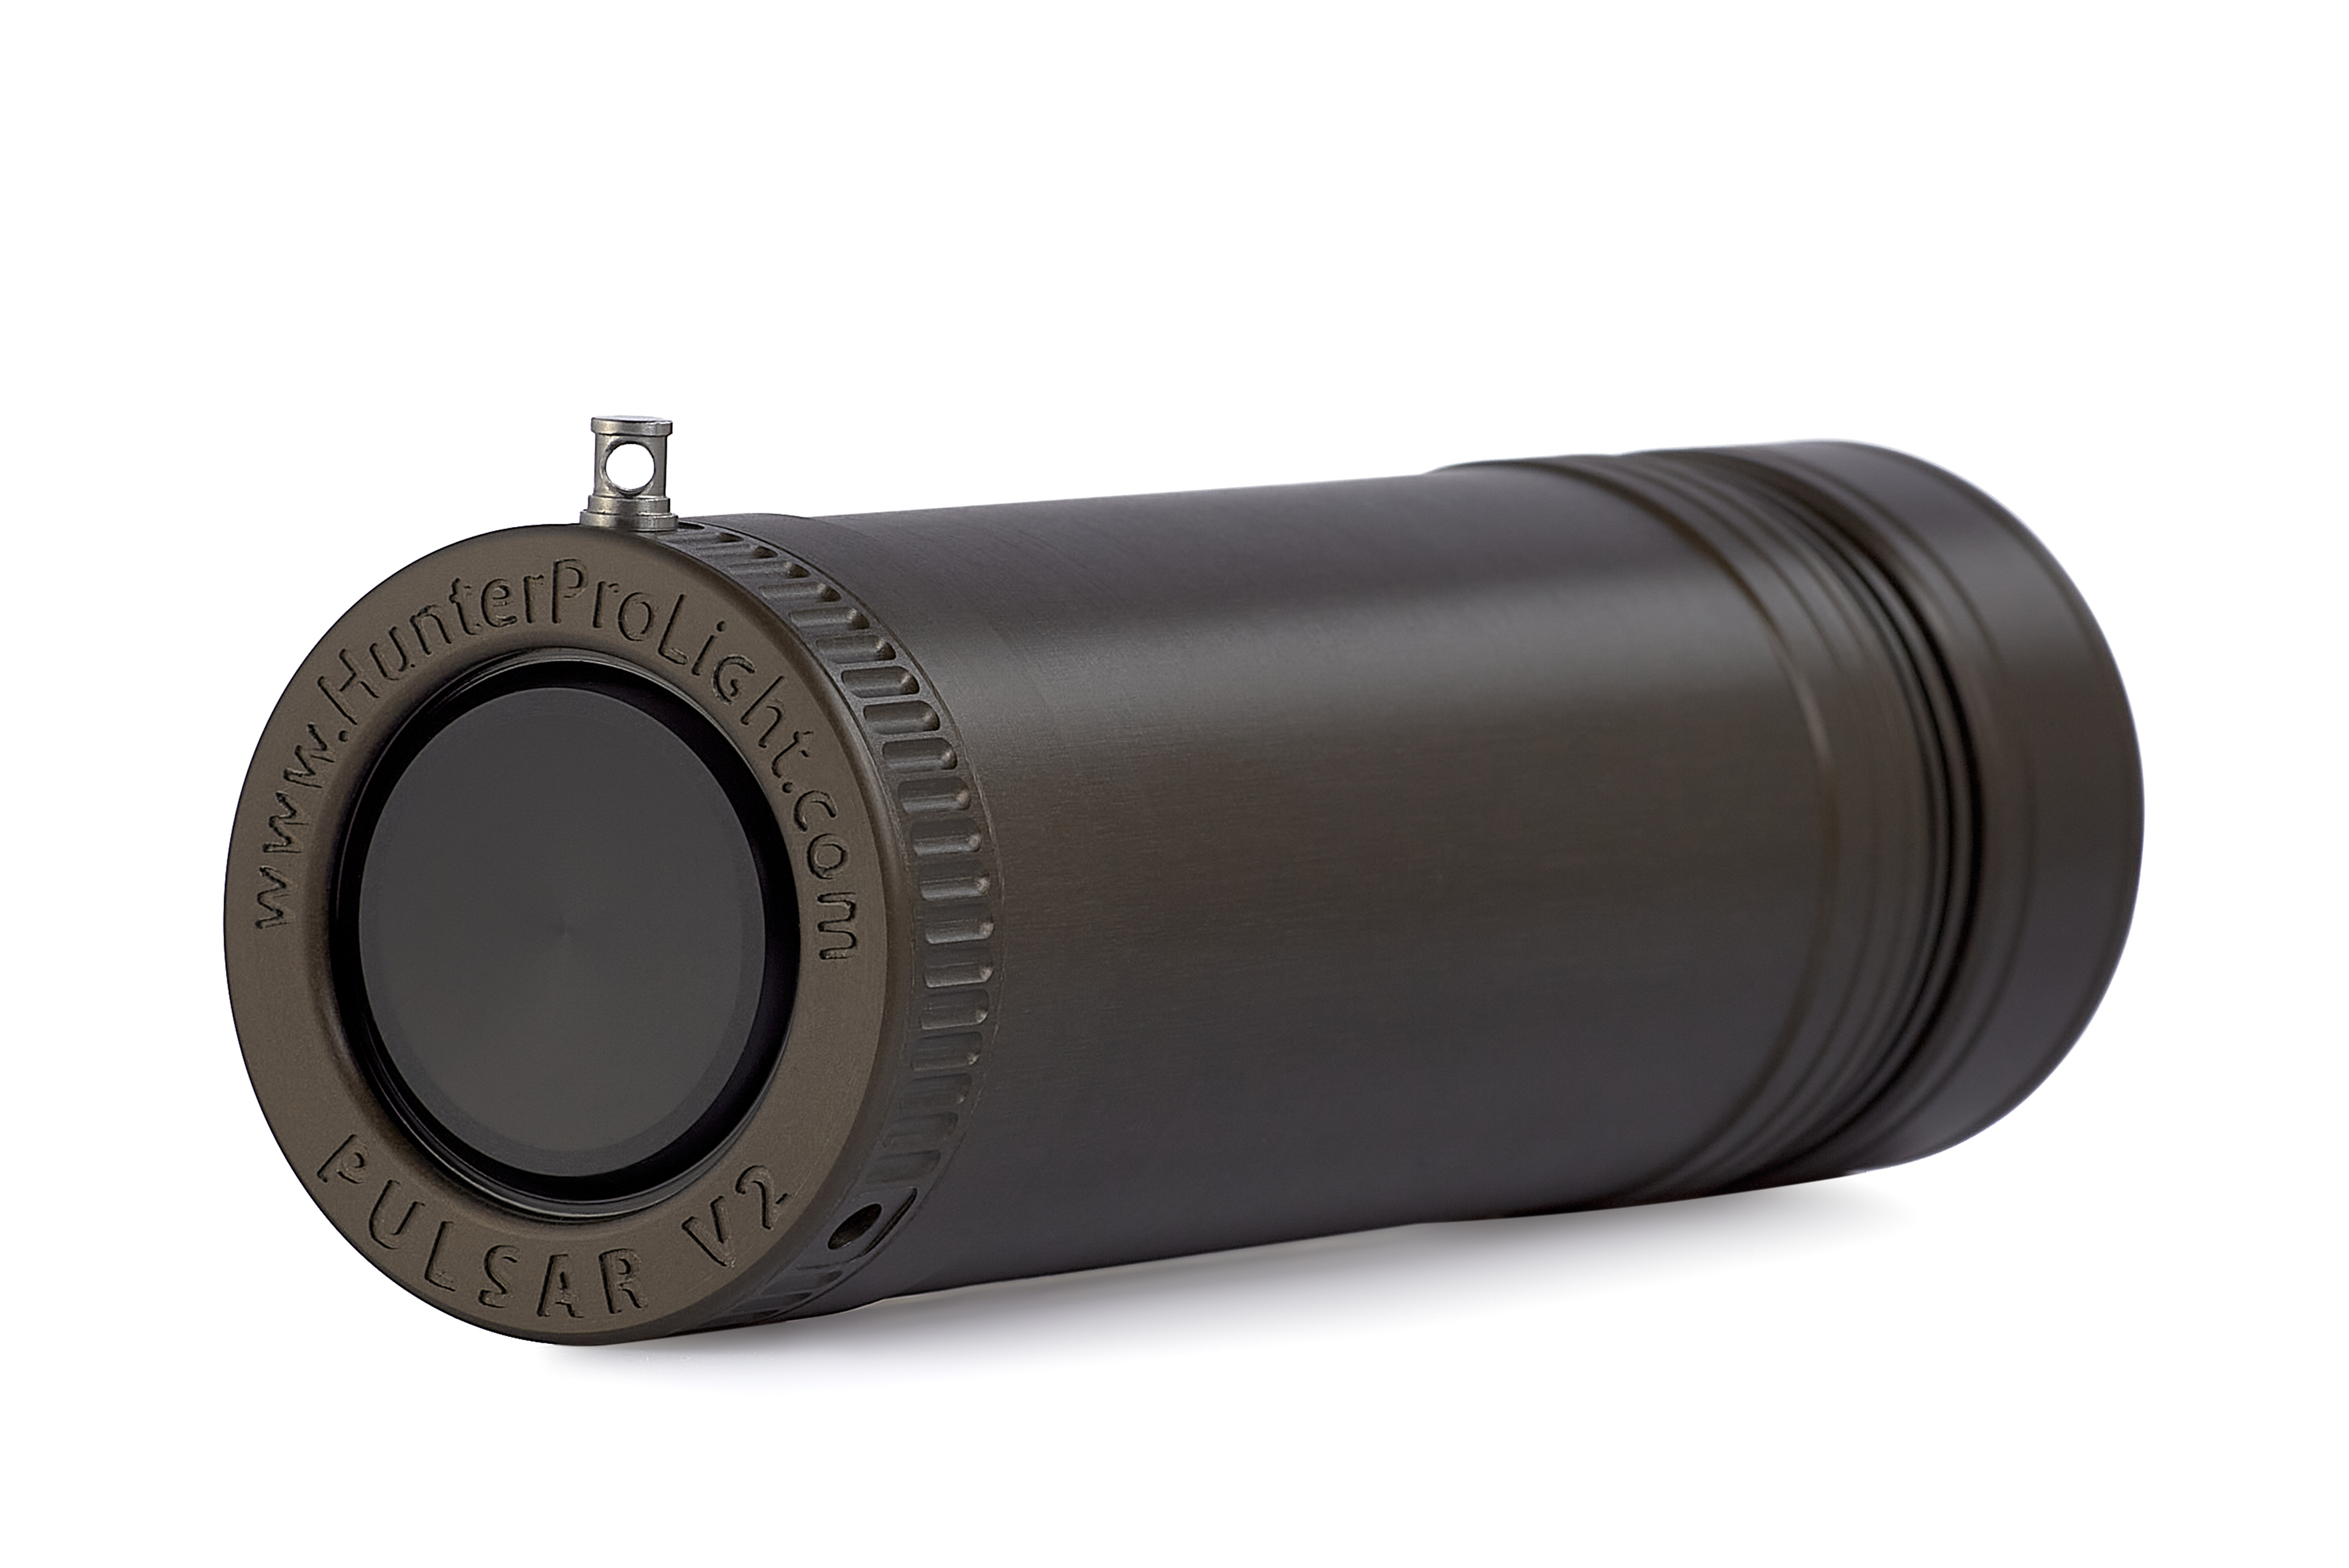 Підводний ліхтар HunterProLight-4 Pulsar V2 для підводного полювання, дайвінгу, а також відеозйомки.